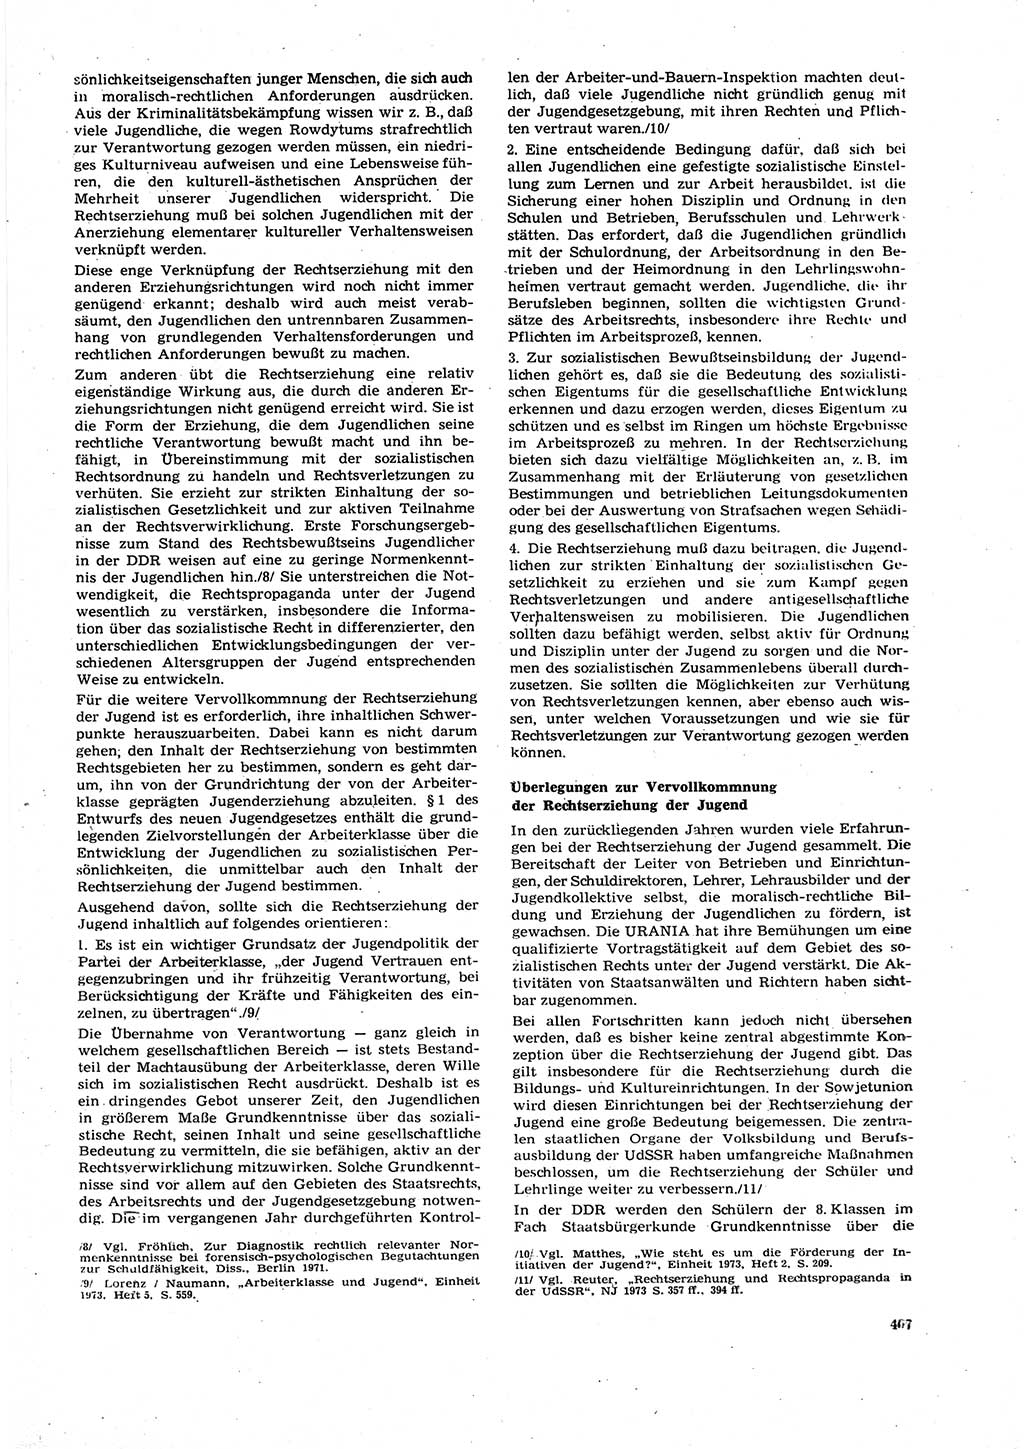 Neue Justiz (NJ), Zeitschrift für Recht und Rechtswissenschaft [Deutsche Demokratische Republik (DDR)], 27. Jahrgang 1973, Seite 407 (NJ DDR 1973, S. 407)